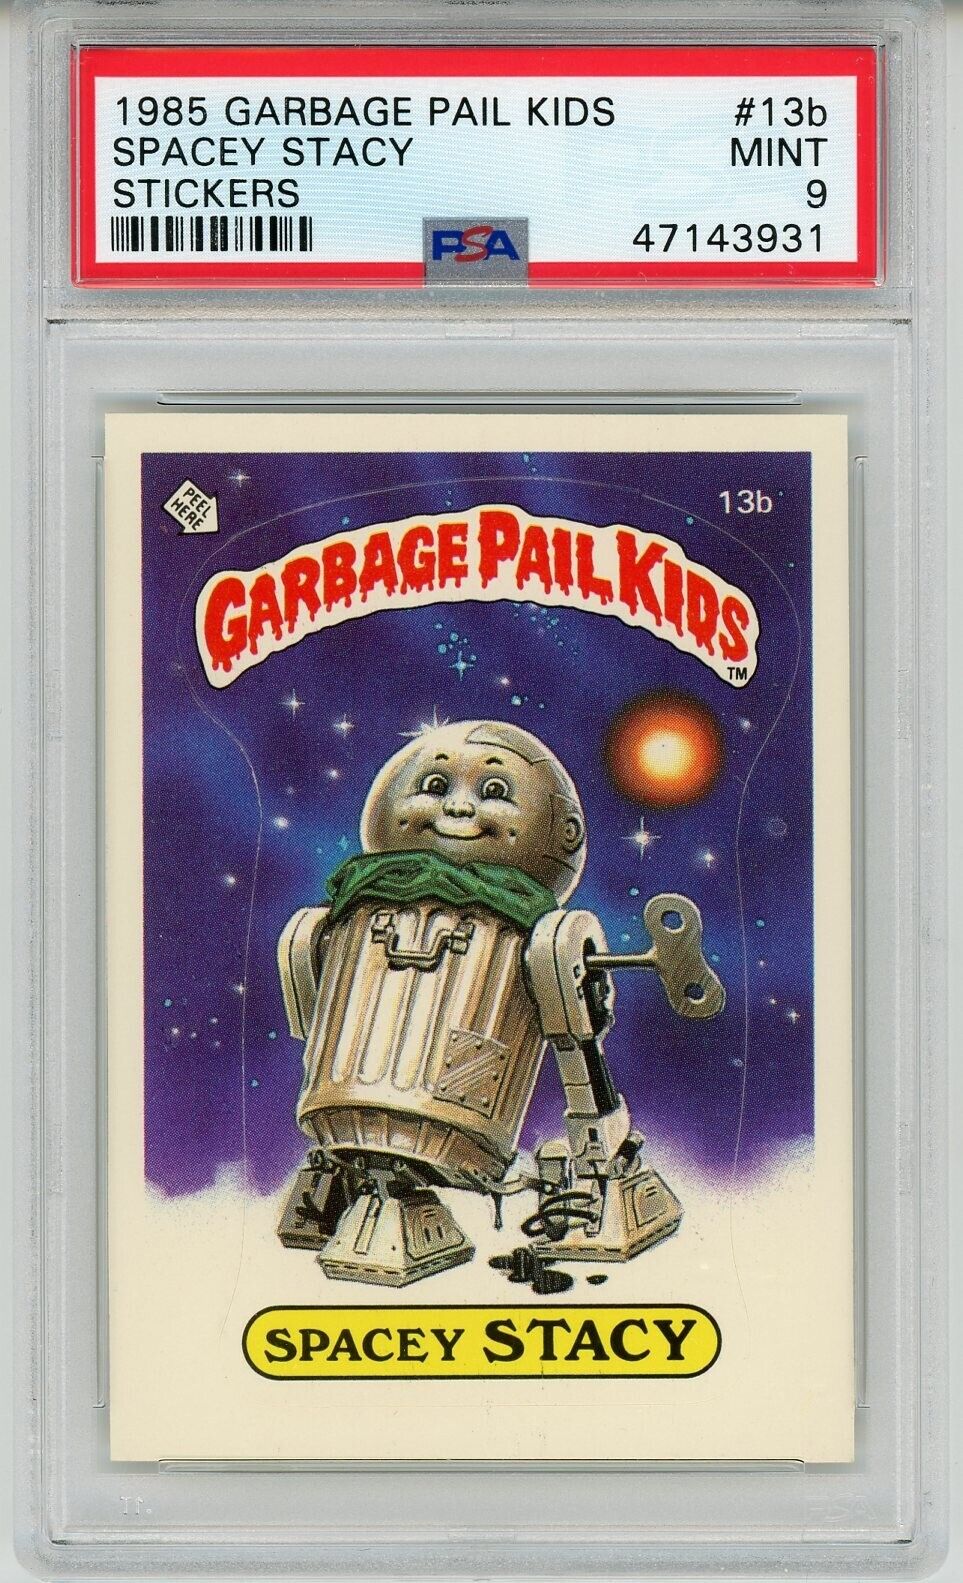 1985 Topps OS1 Garbage Pail Kids Series 1 SPACEY STACY 13b Matte Card PSA 9